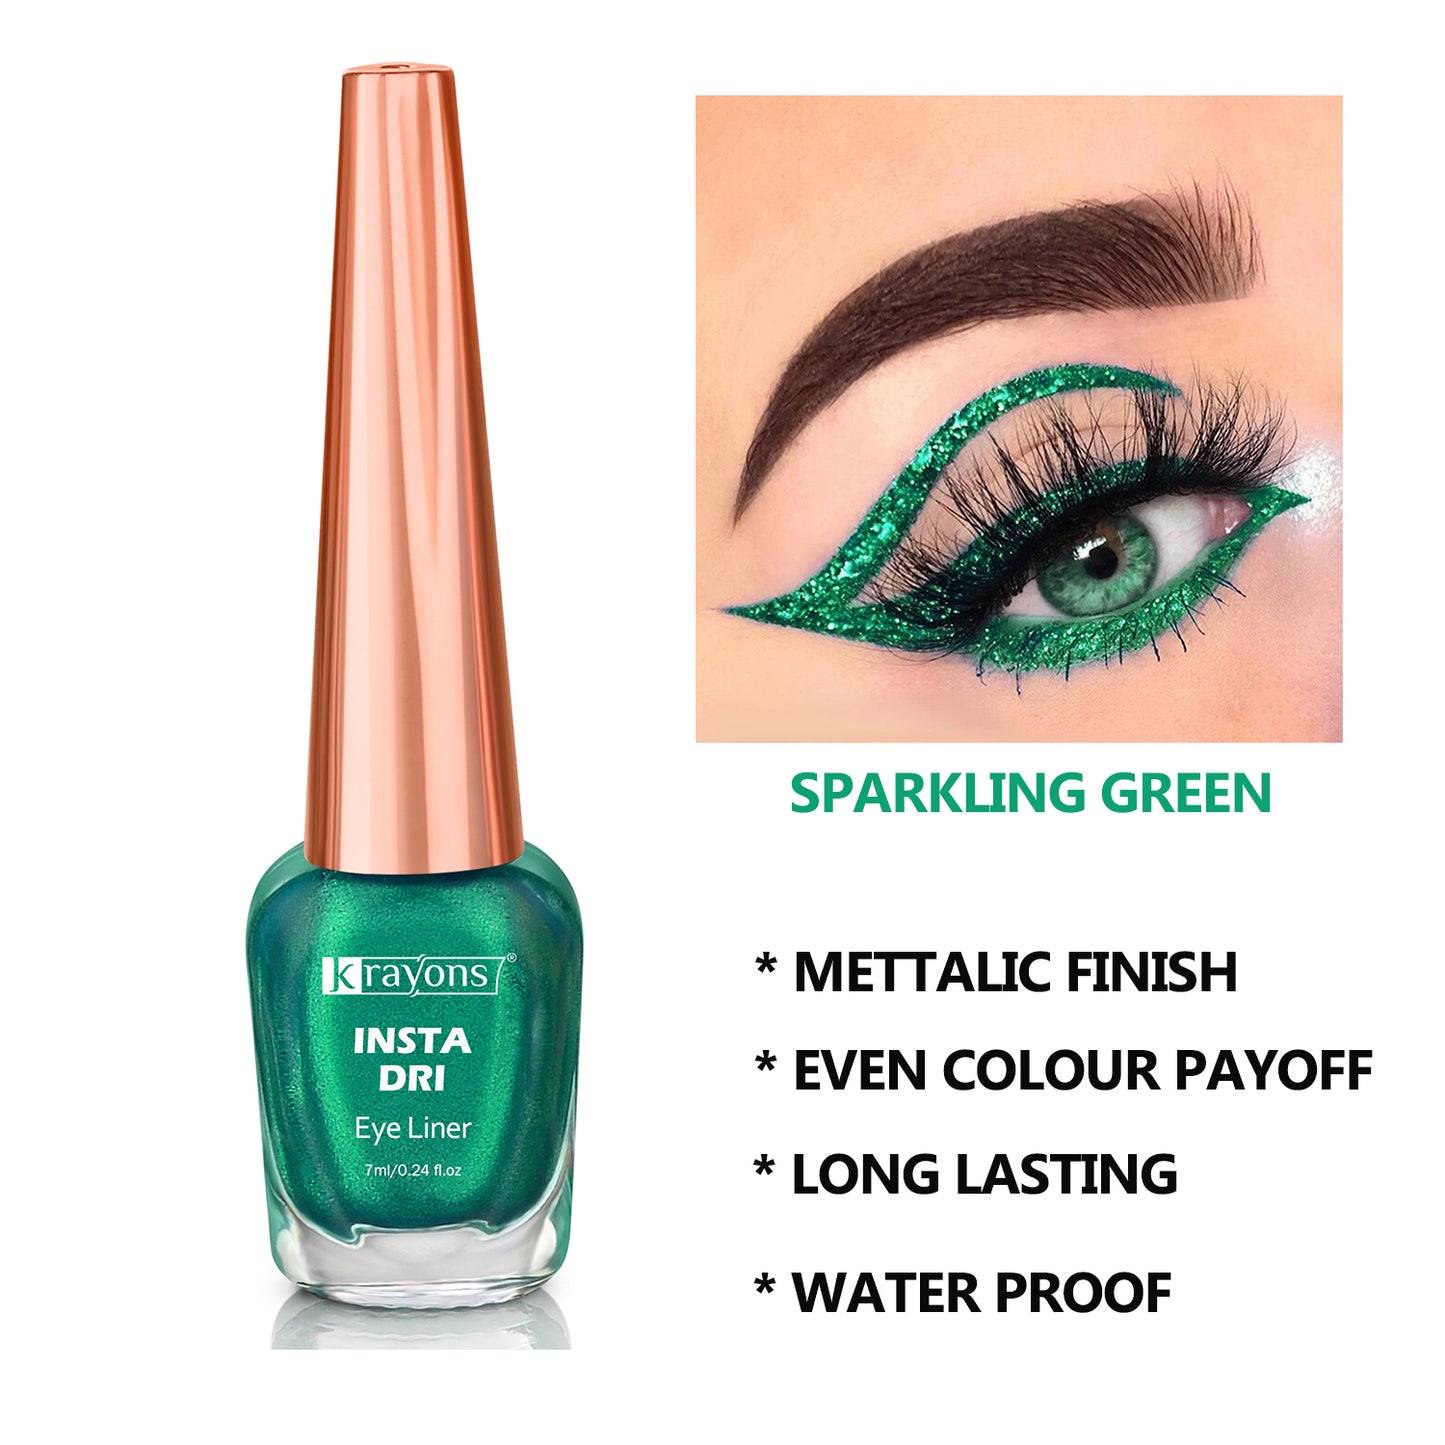 Krayons Insta Dri Sparkling Eyeliner, Grey, Green, Waterproof, Longlasting, 7ml Each, Combo (Pack of 2)